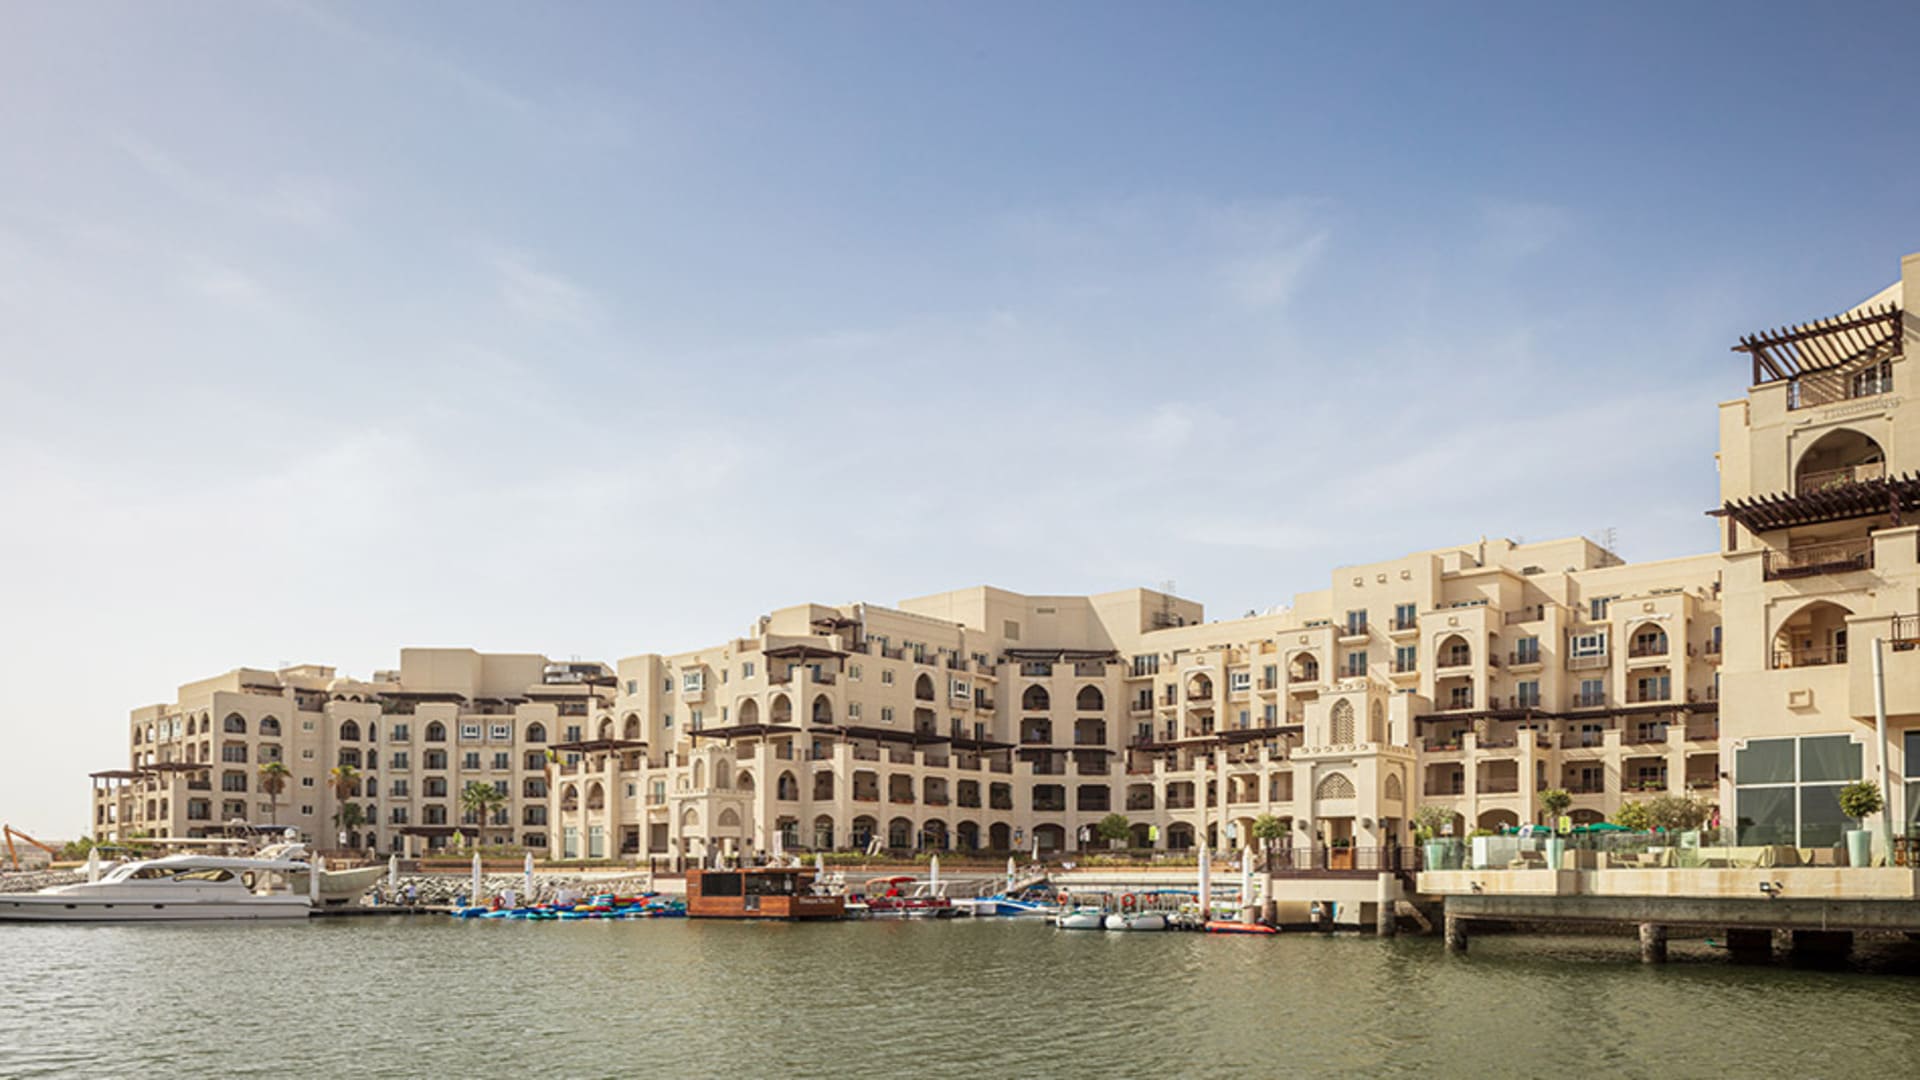 EASTERN MANGROVES COMPLEX by Aldar Properties in Abu Dhabi, UAE